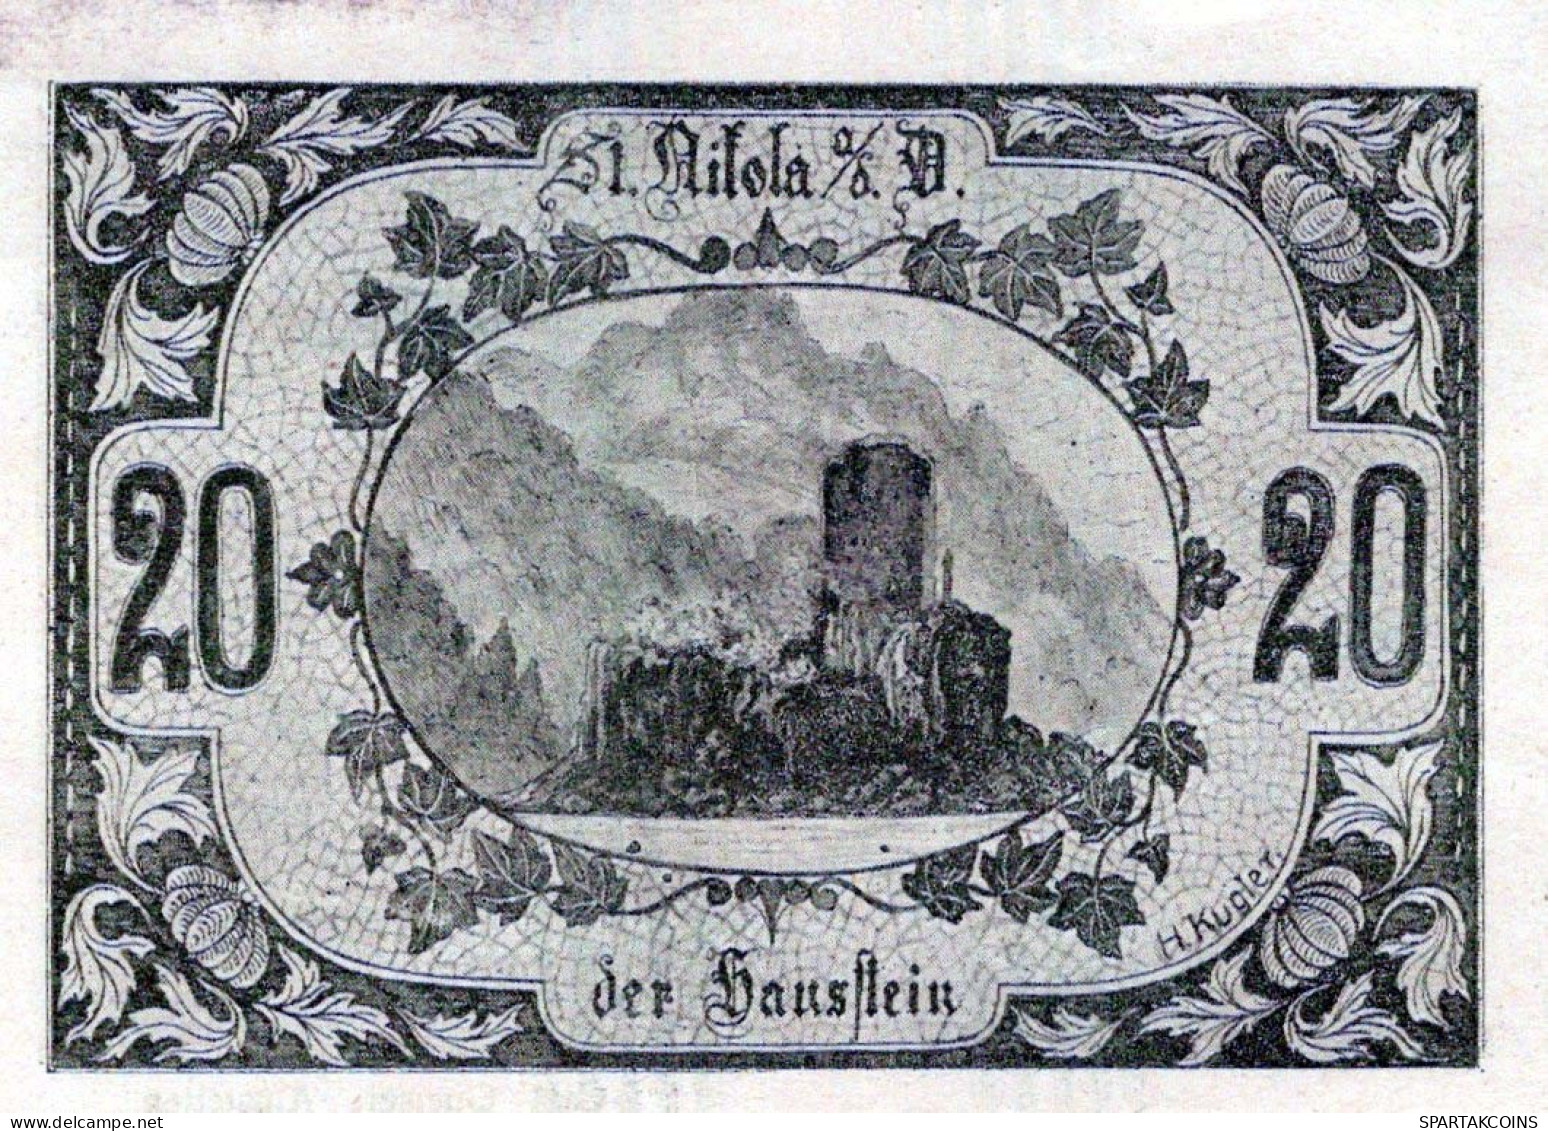 20 HELLER 1920 Stadt SANKT NIKOLA AN DER DONAU Oberösterreich Österreich #PE884 - Lokale Ausgaben